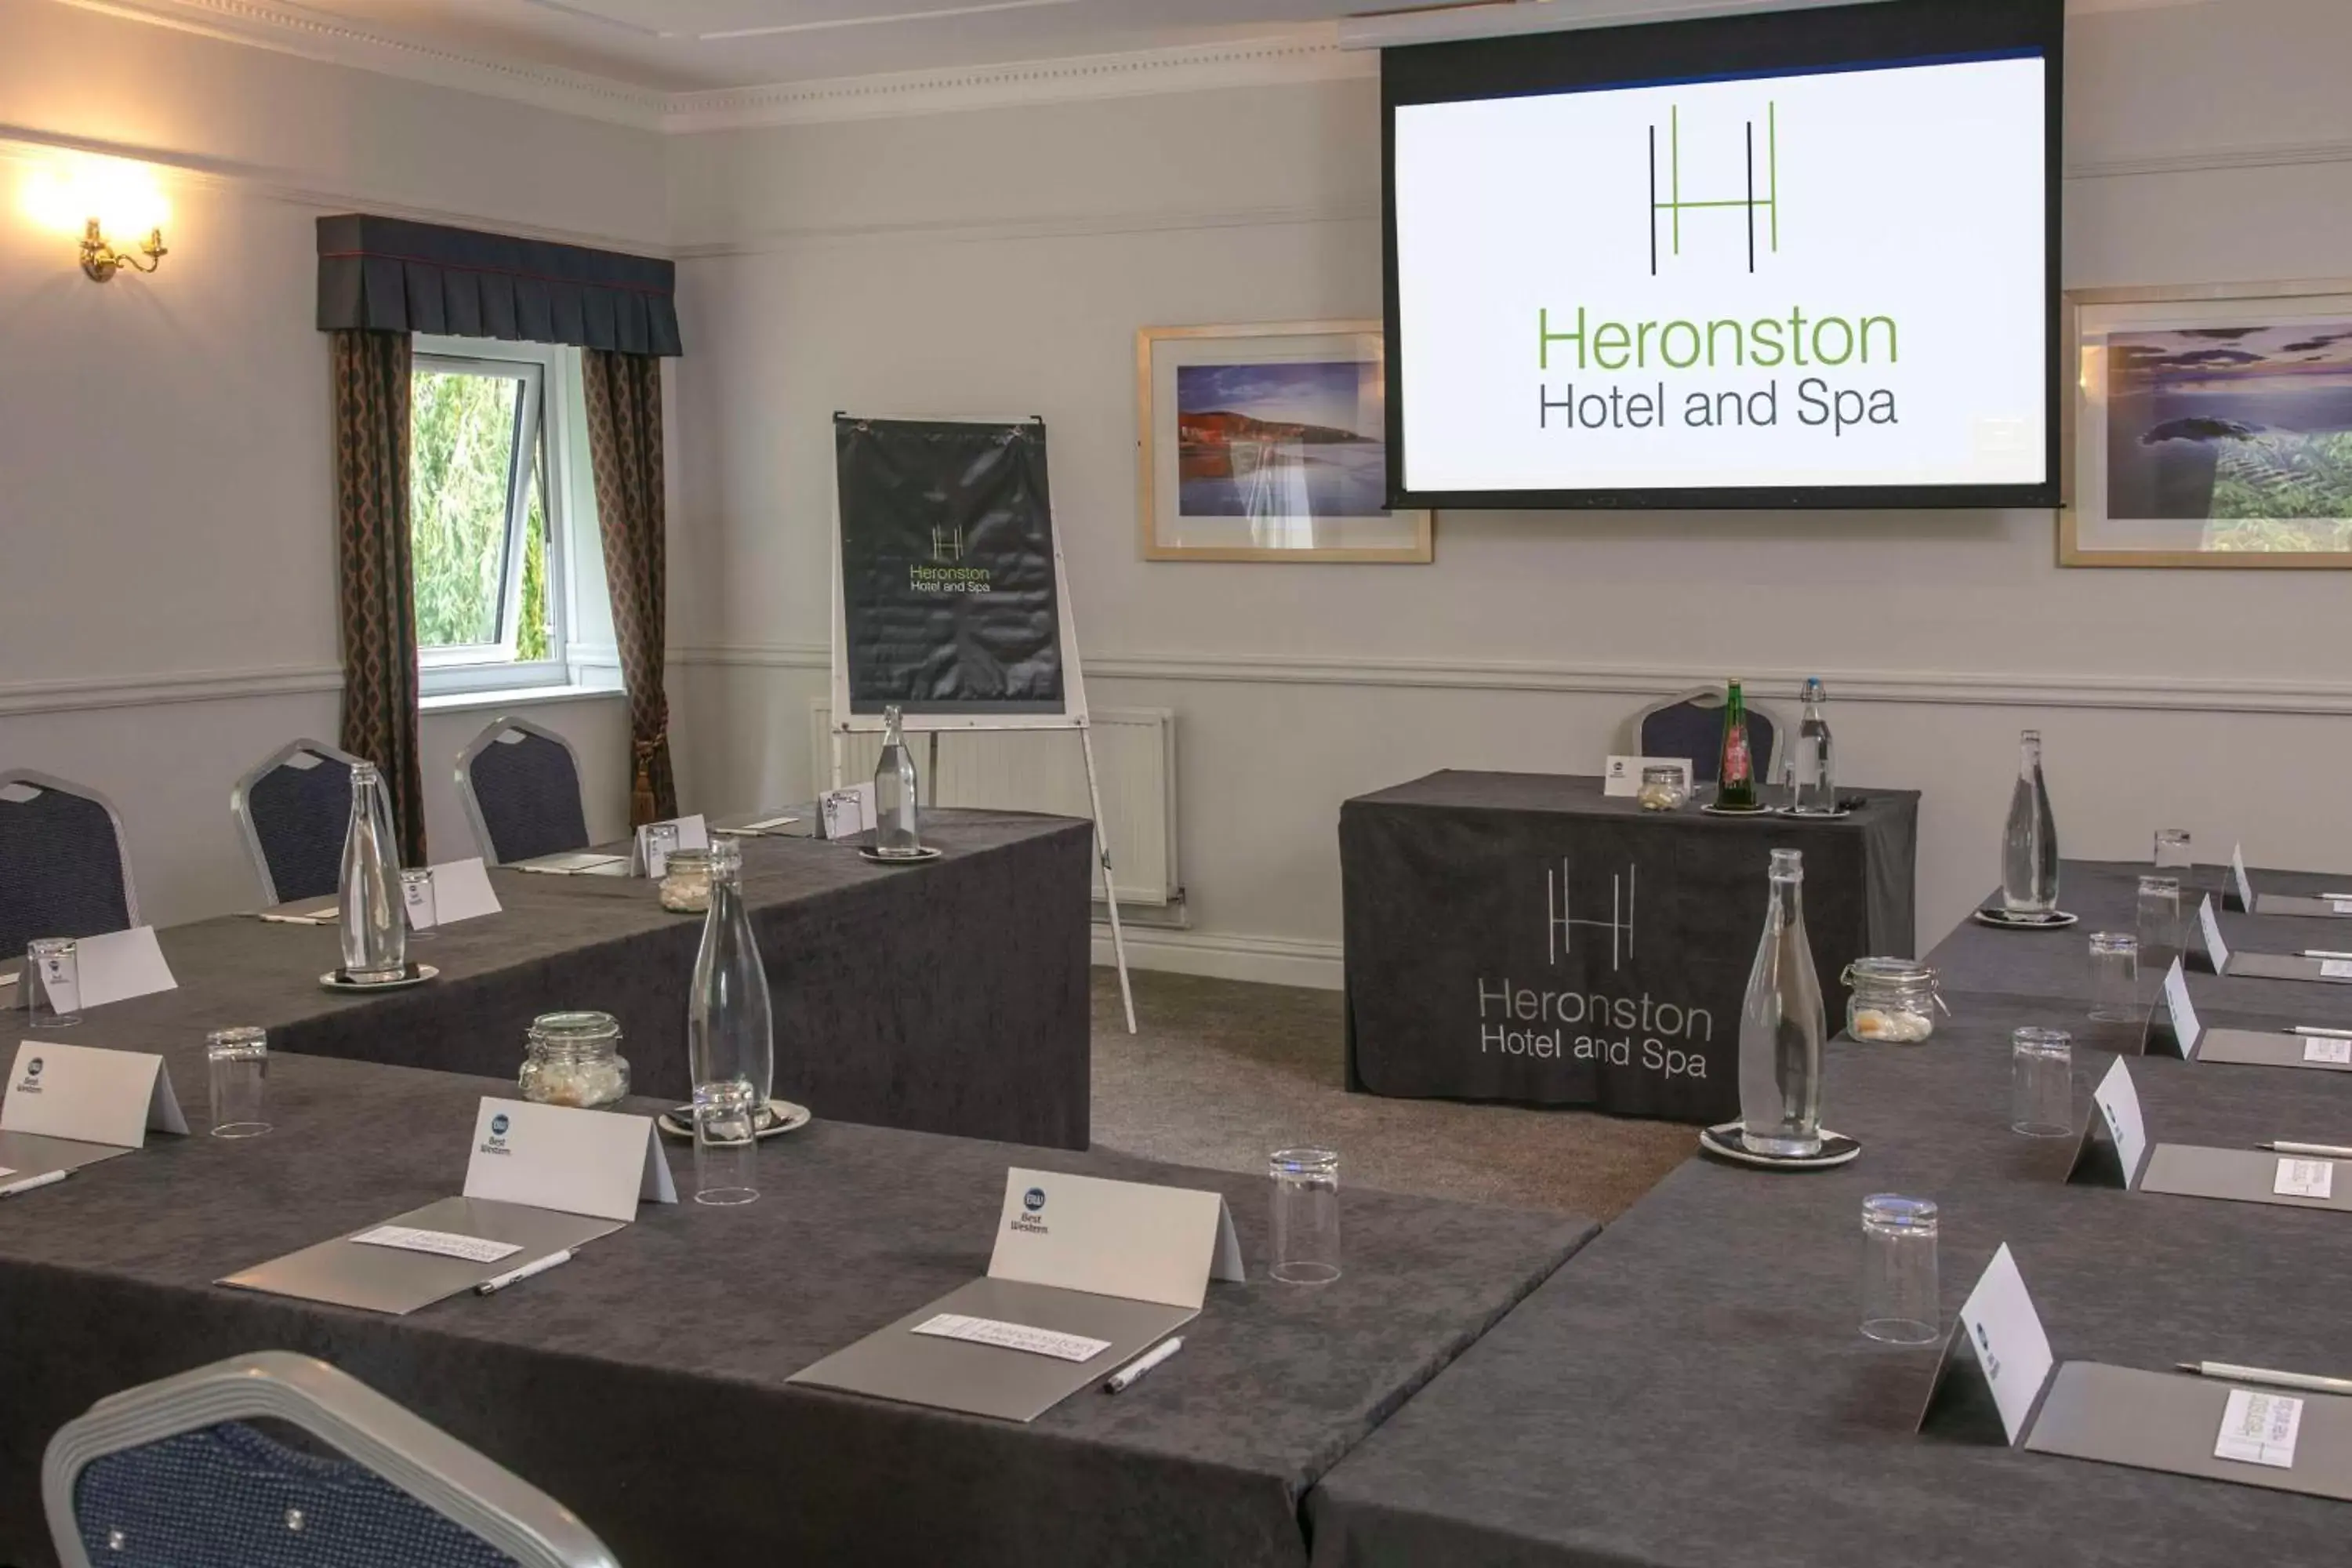 Meeting/conference room in Best Western Heronston Hotel & Spa